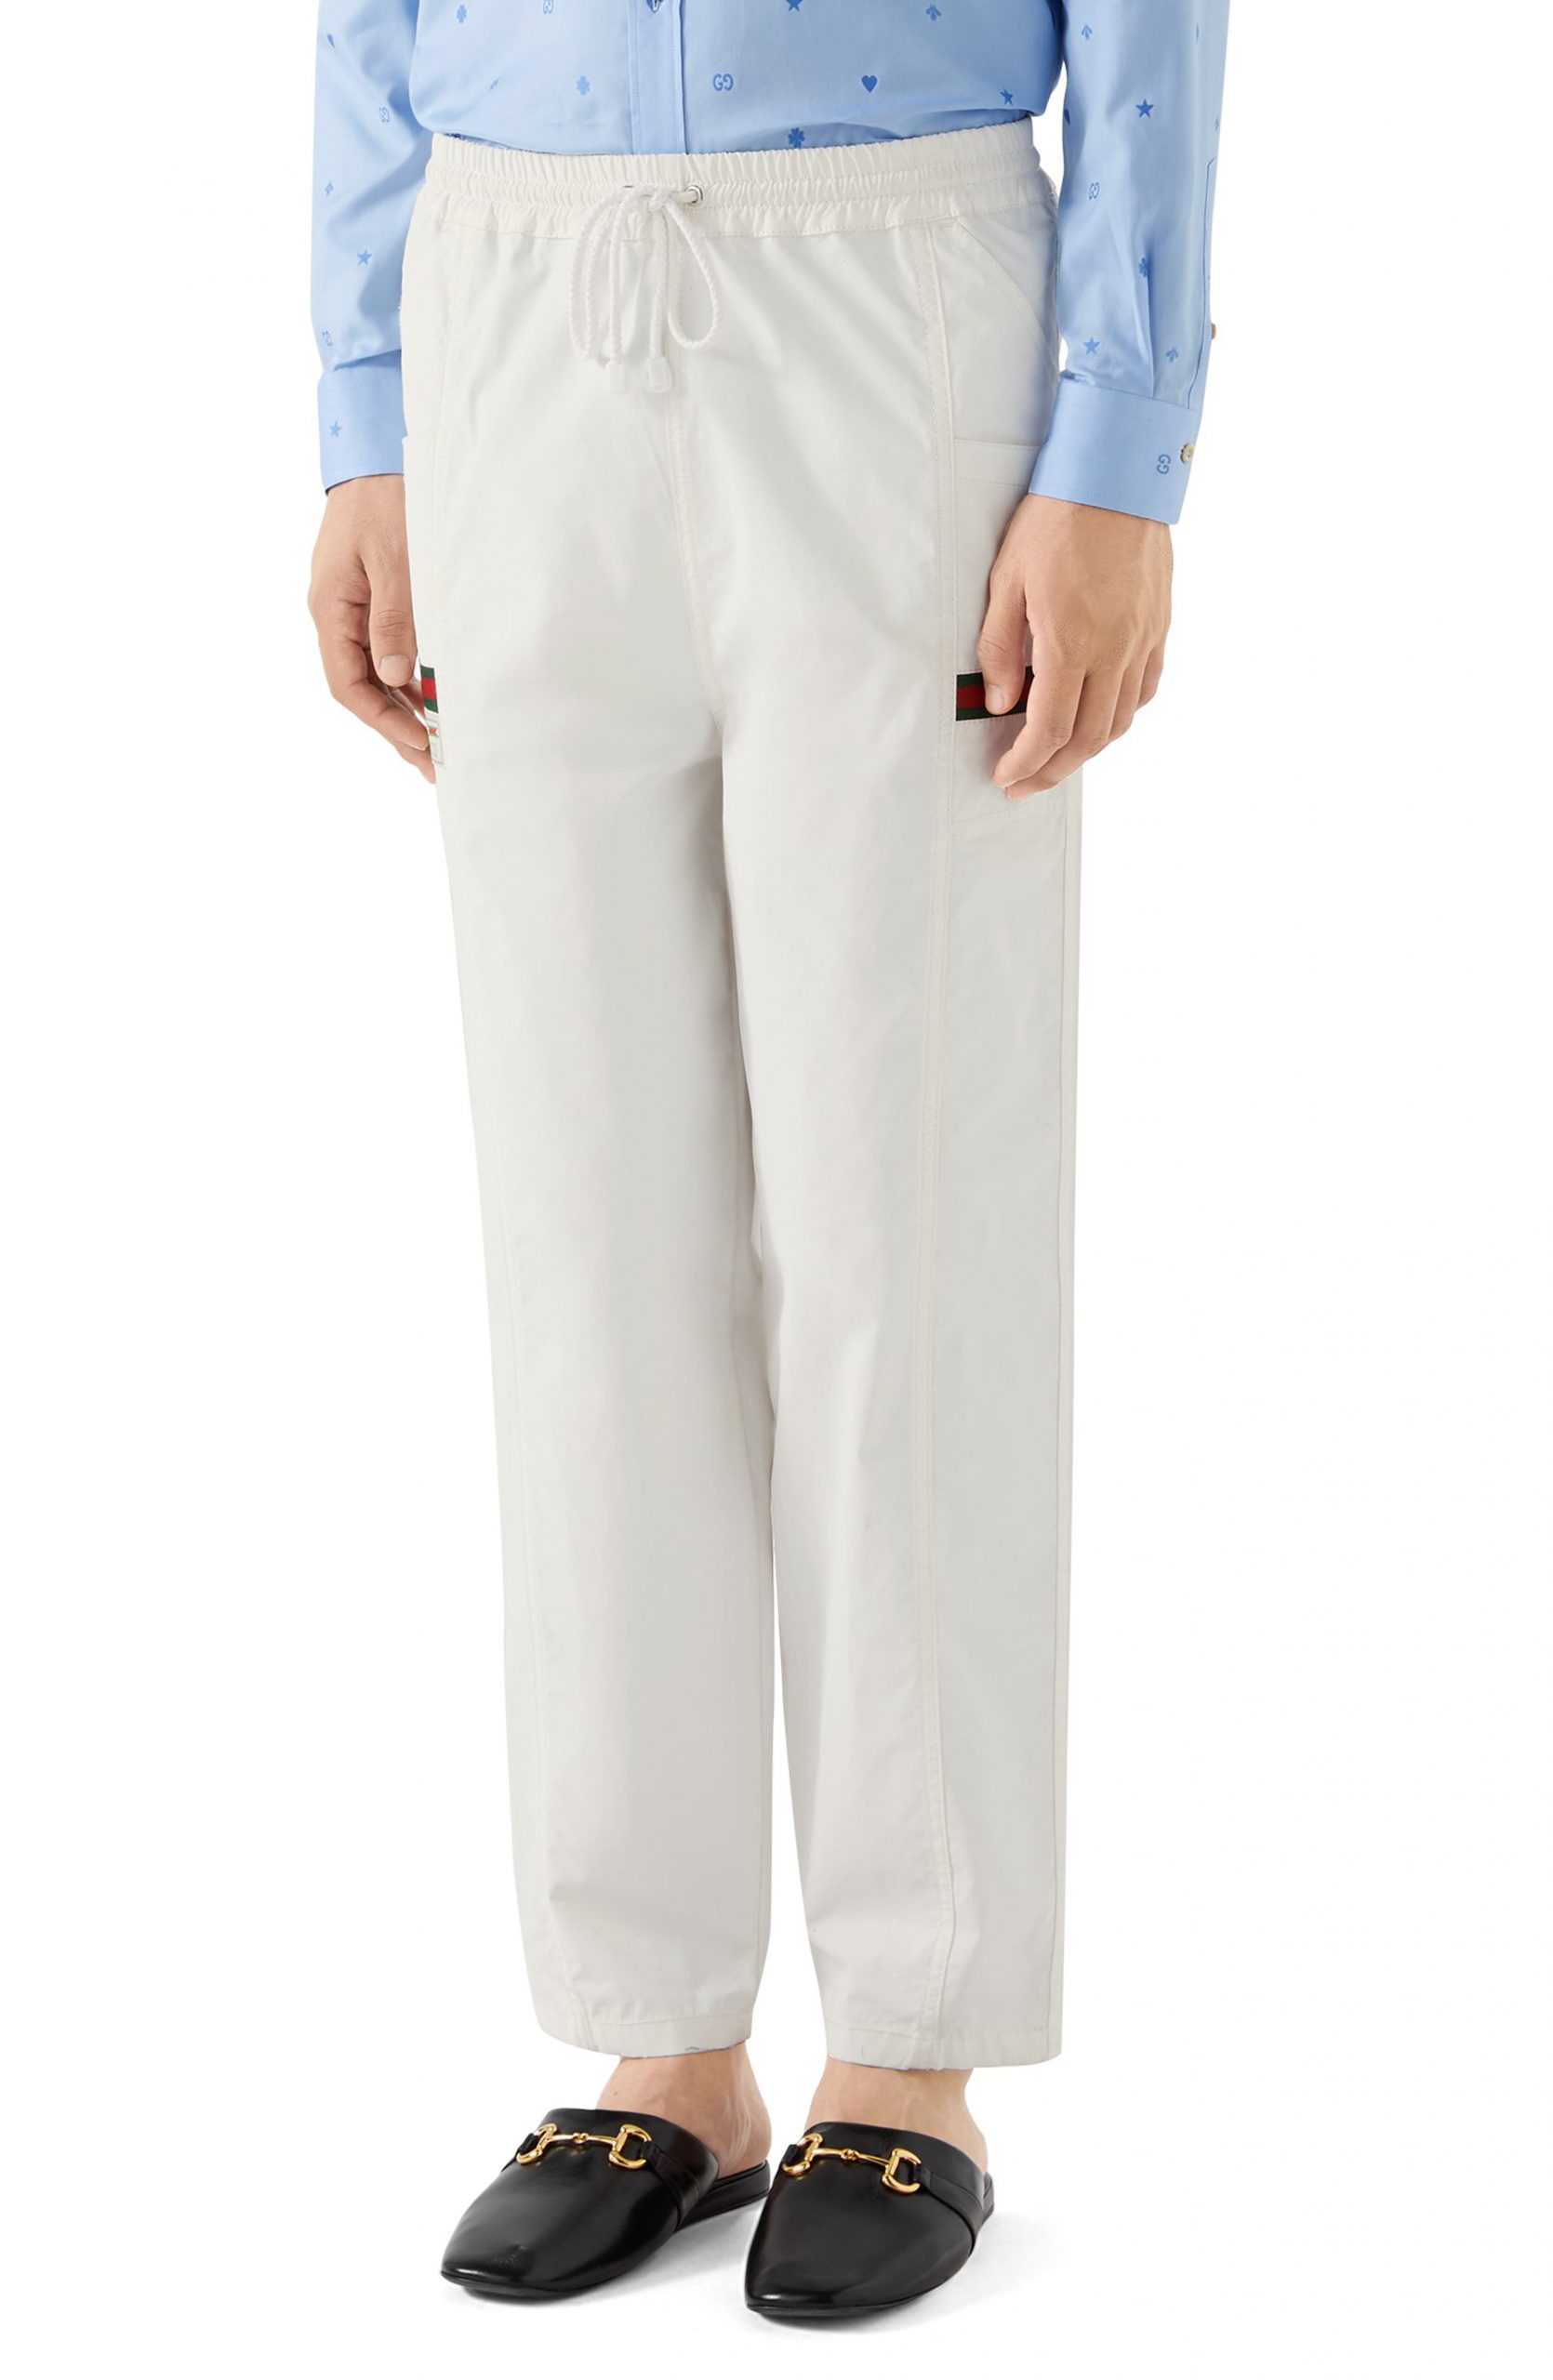 gucci white pants